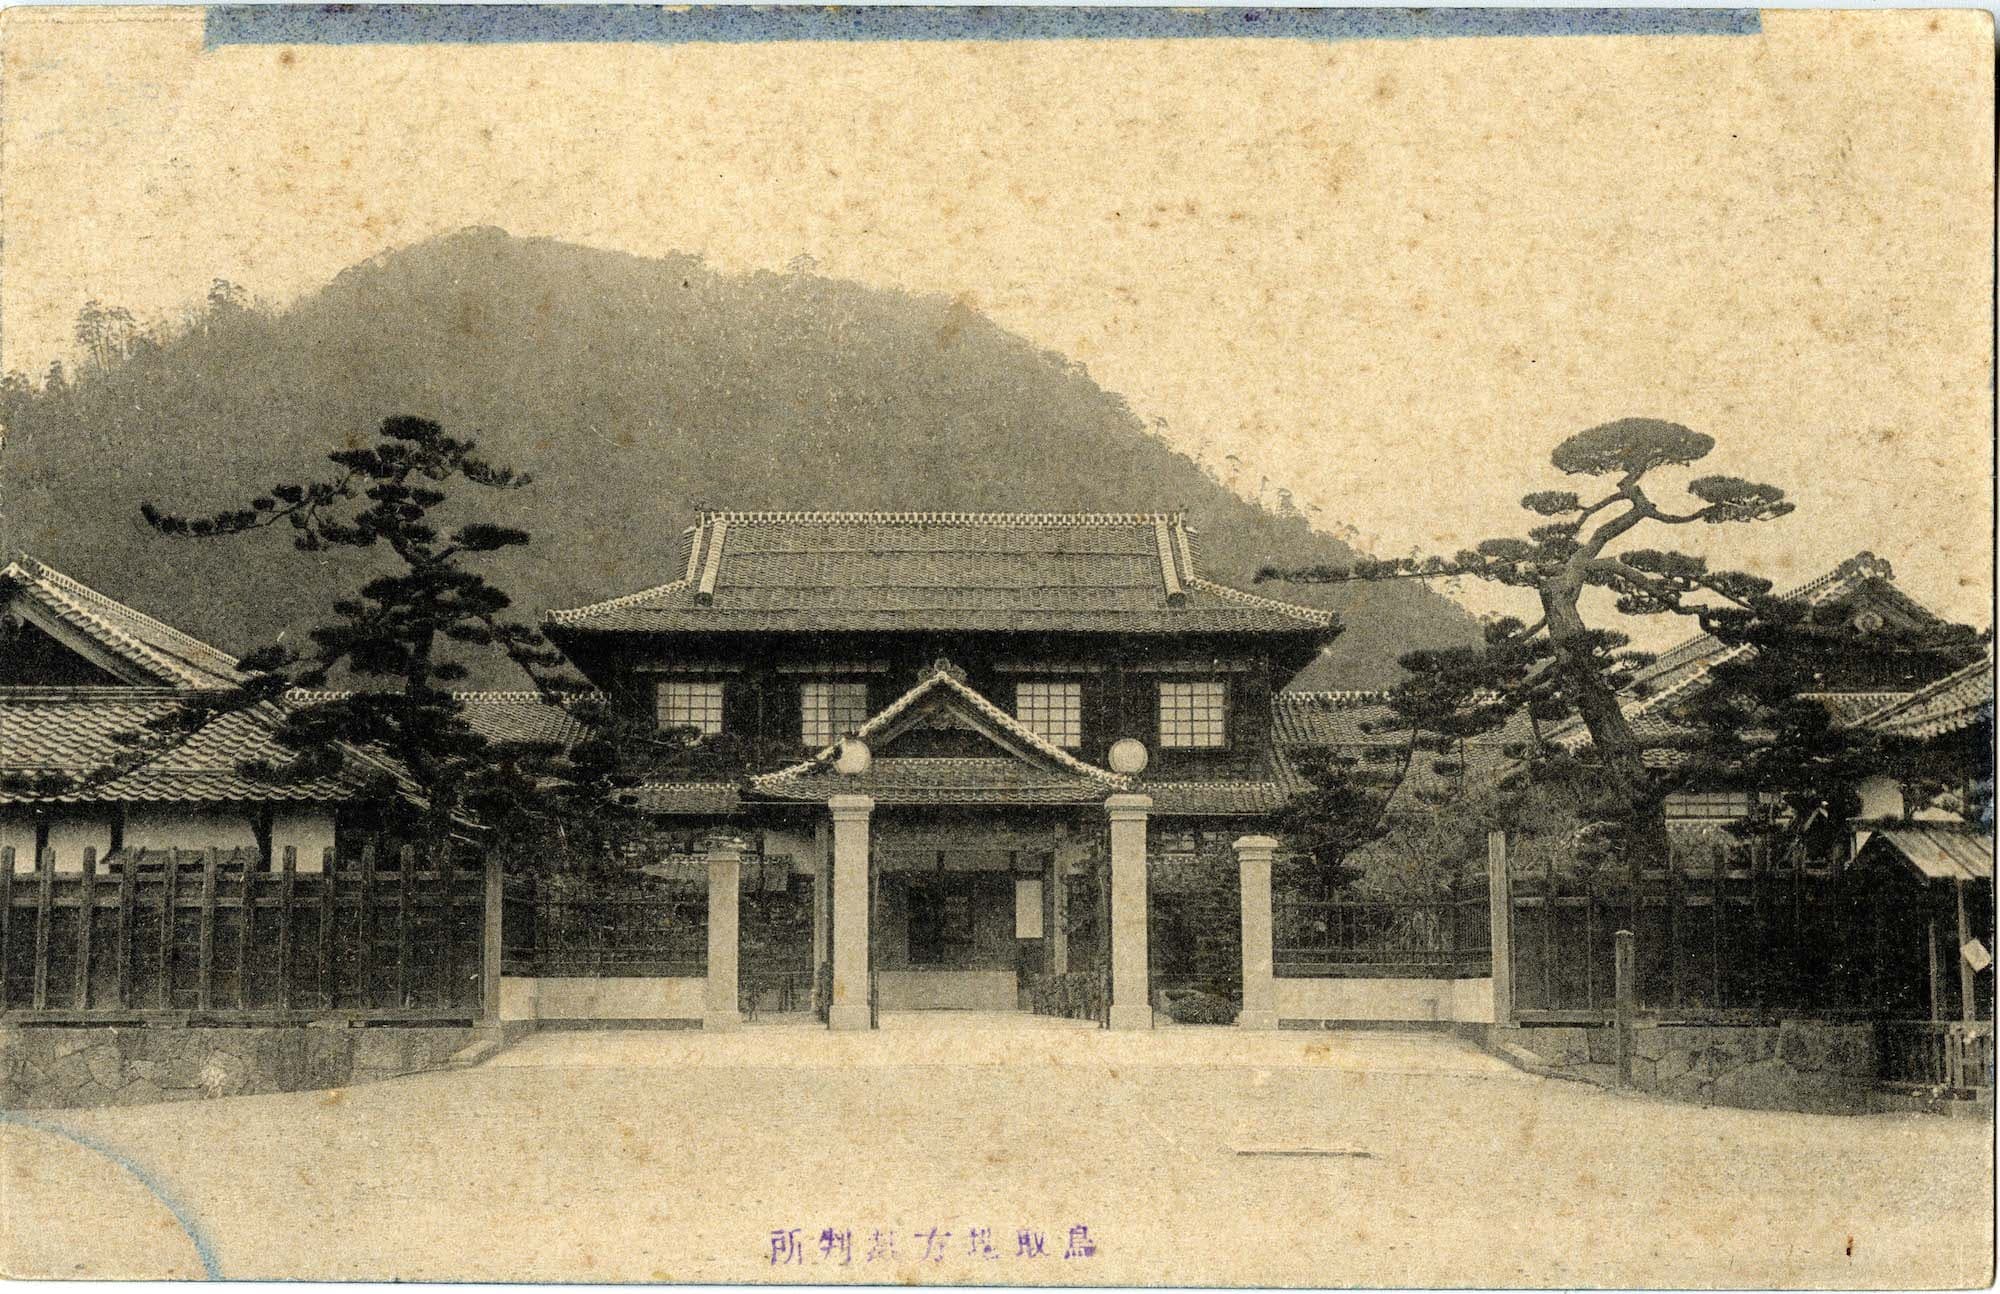 鳥取地方裁判所's image 1